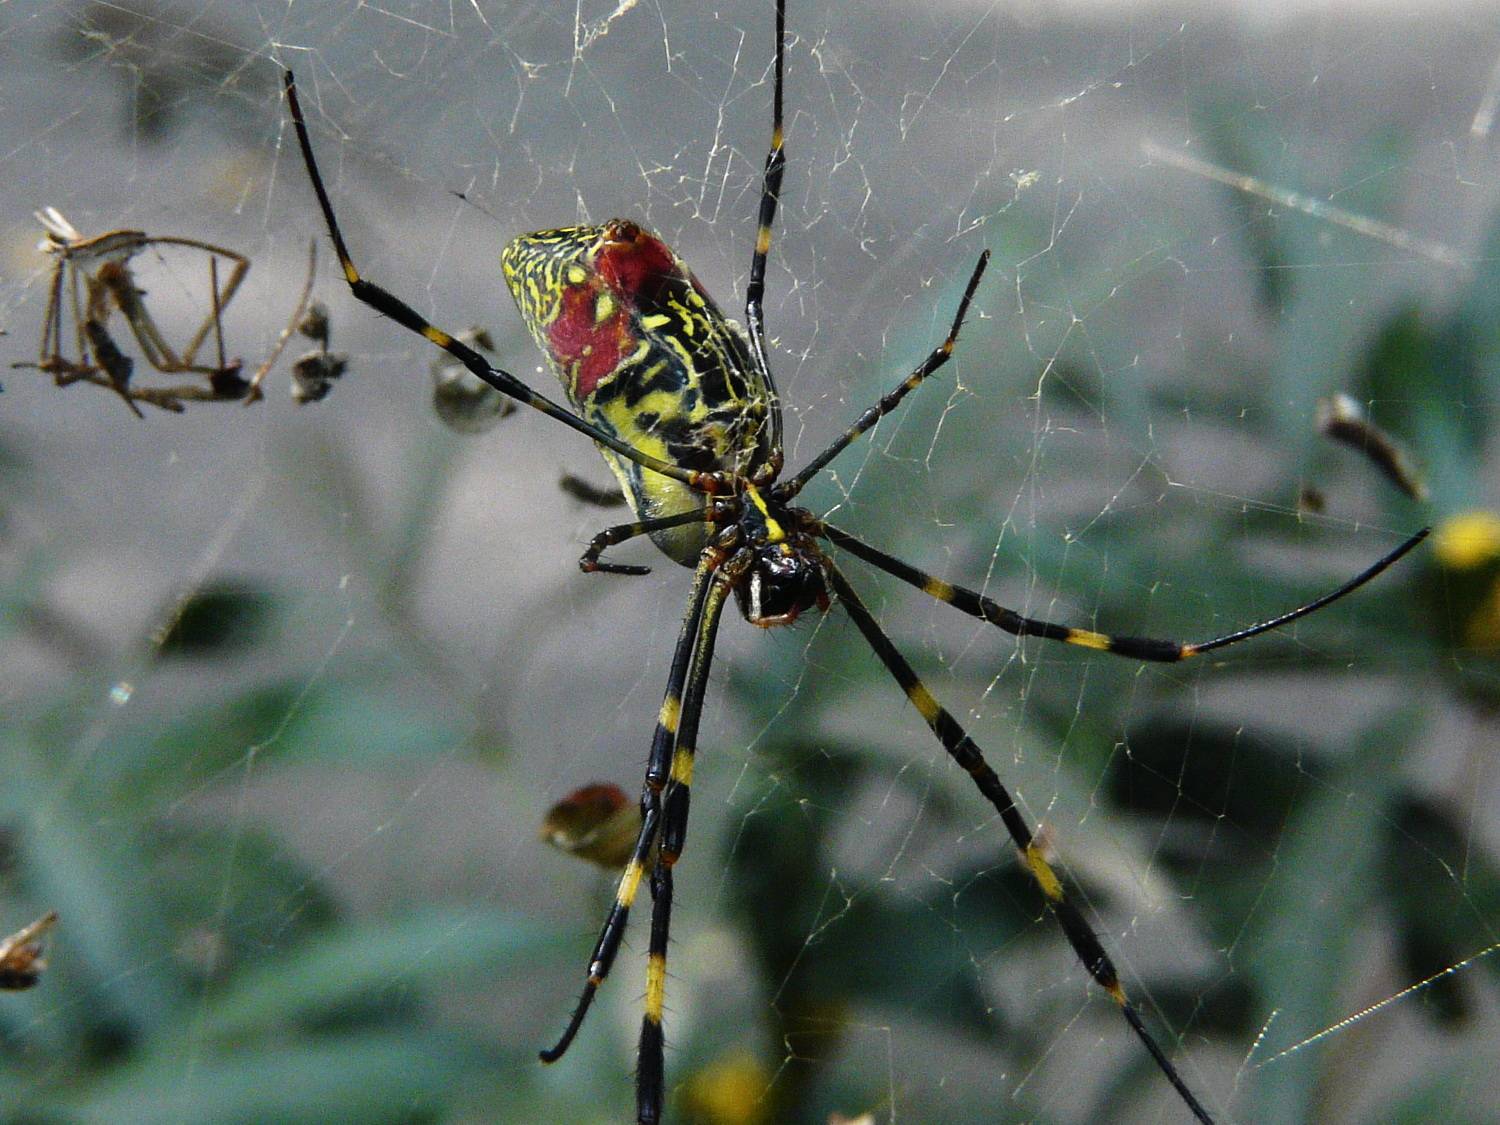 原创巨型蜘蛛入侵美国规模扩大吓坏居民美专家有毒中国很常见